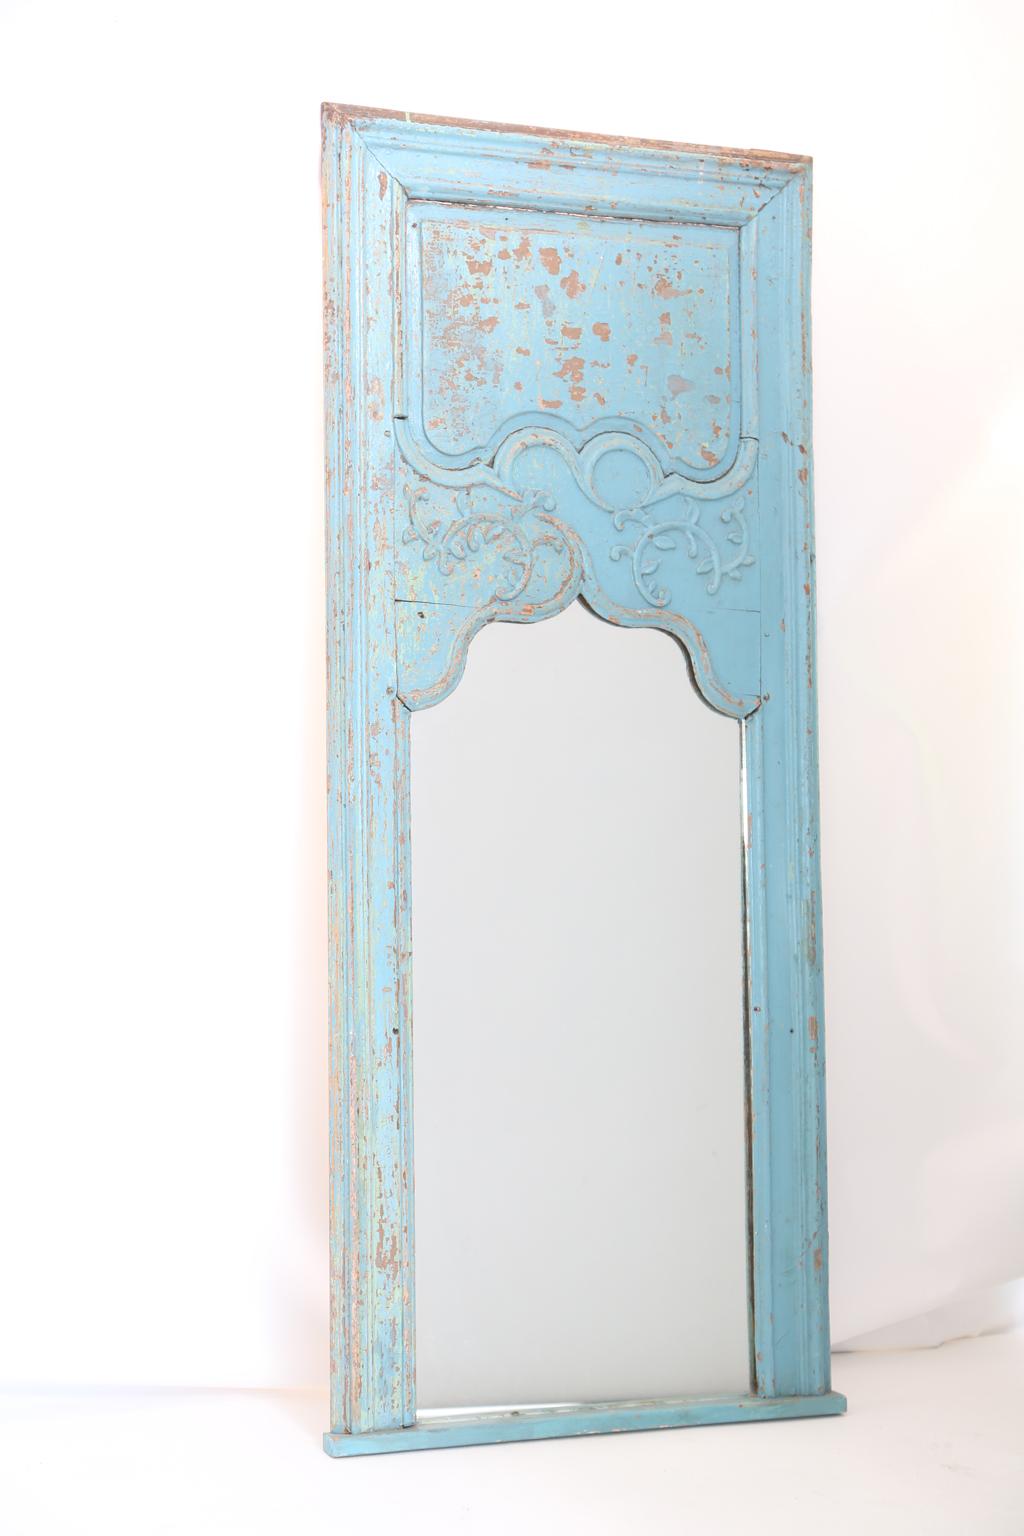 Bemalter Rokoko-Trumeau-Spiegel mit einer bemalten Oberfläche, die eine wünschenswerte natürliche Abnutzung aufweist, mit einem erhabenen und mit Feldern versehenen Rahmen, umlaufenden Blattwerken und einer geformten Spiegelplatte. 

Lager-ID: